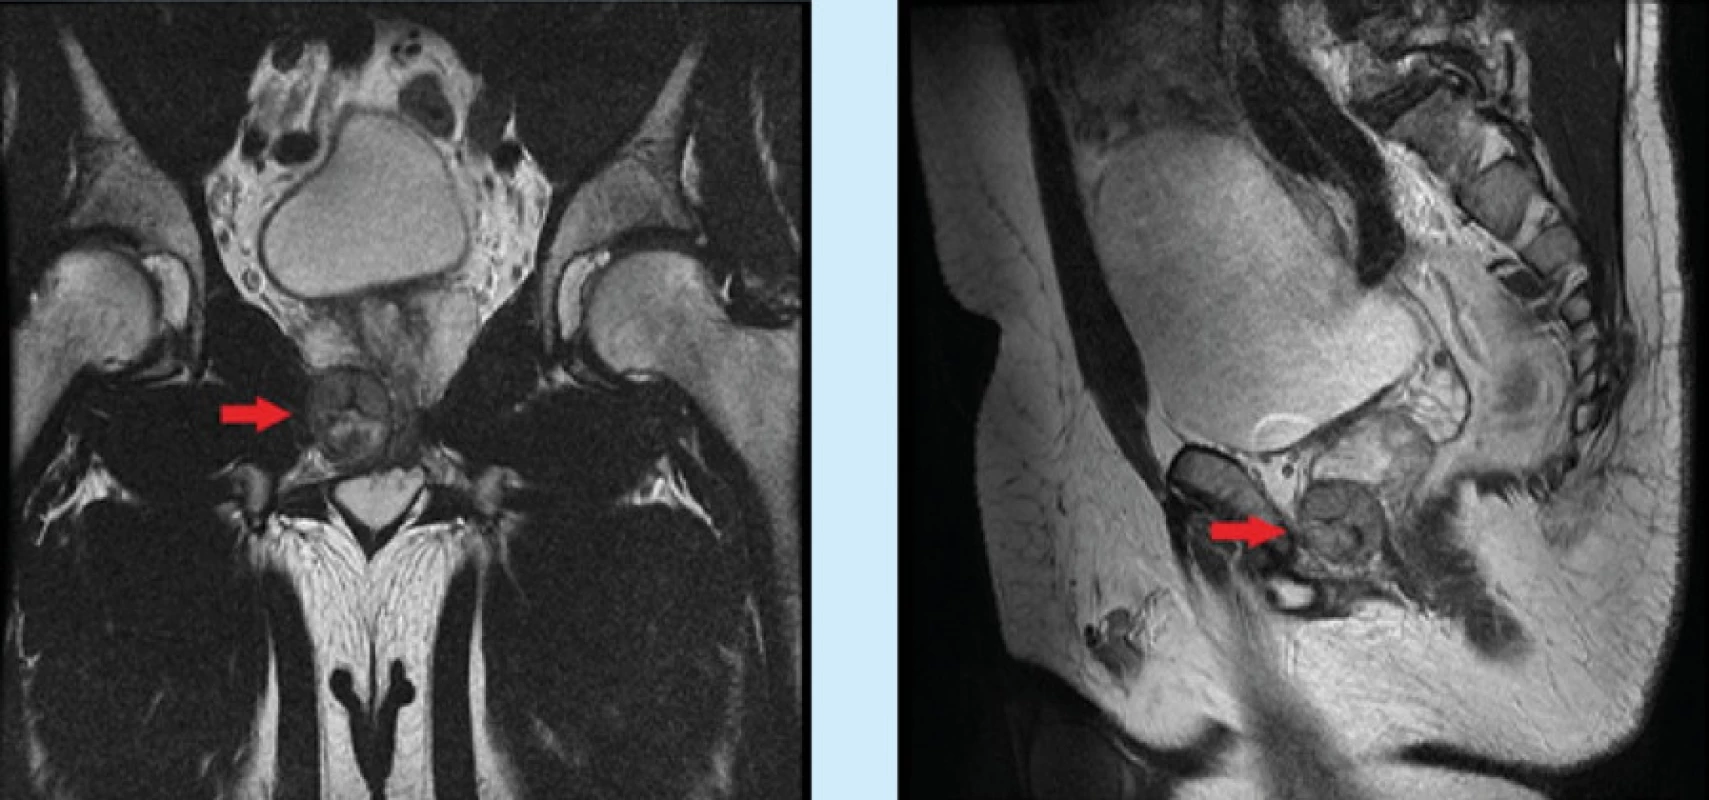 Vpravo při apexu prostaty zobrazeno ložisko velikosti 37 × 31 × 26 mm (obraz MR, vlevo koronární a vpravo
sagitální řez v T2 váženém obraze)<br>
Fig. 1. On the right at the apex of the prostate a lesion measuring 37 × 31 × 26 mm is shown (MR image, on the left
a coronary and on the right a sagittal section in a T2 weighted image)